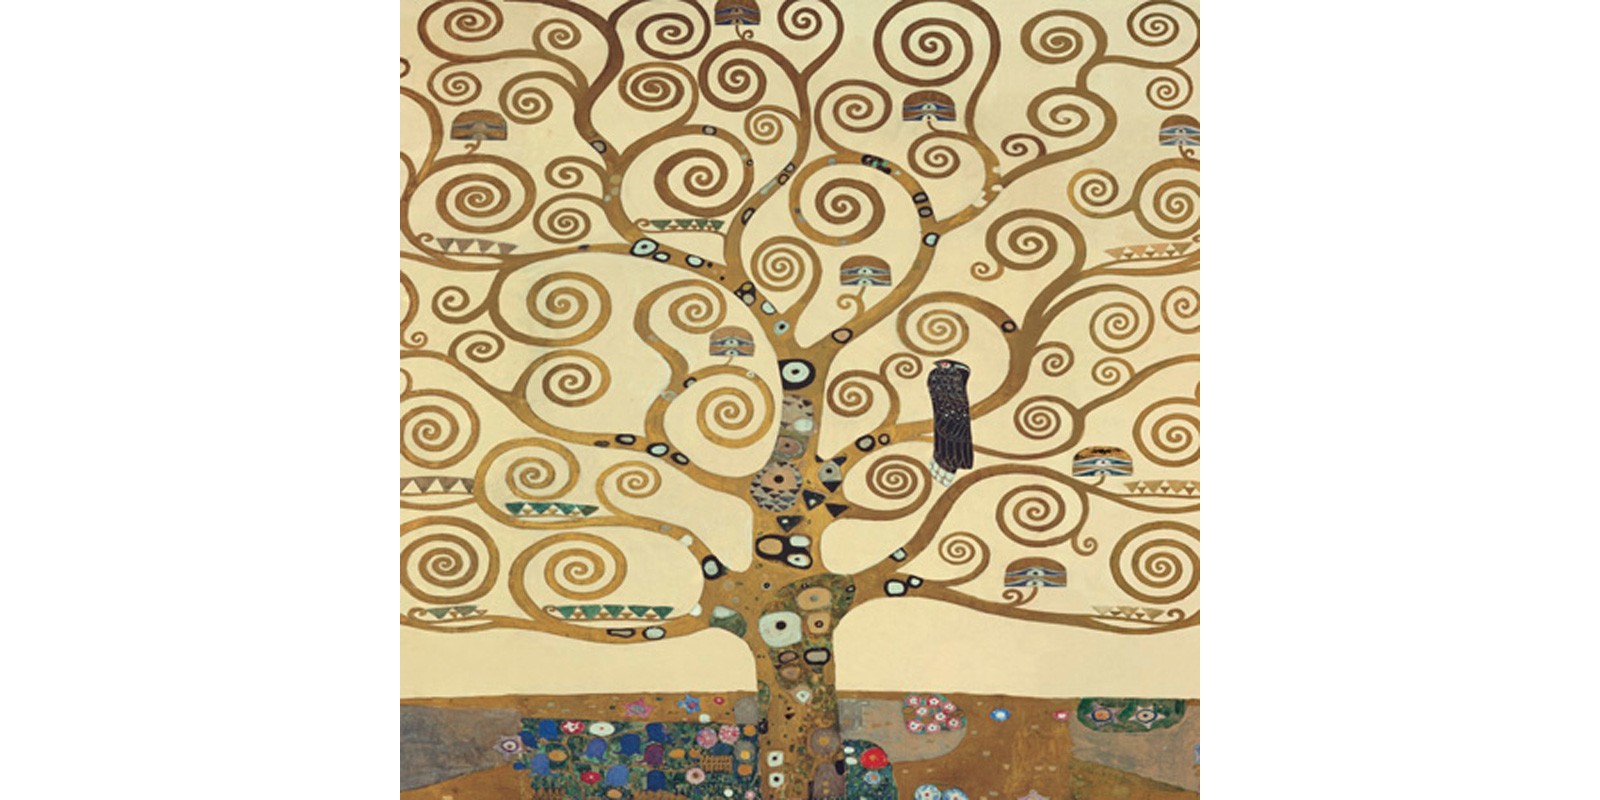 Gustav Klimt - The Tree of Life II